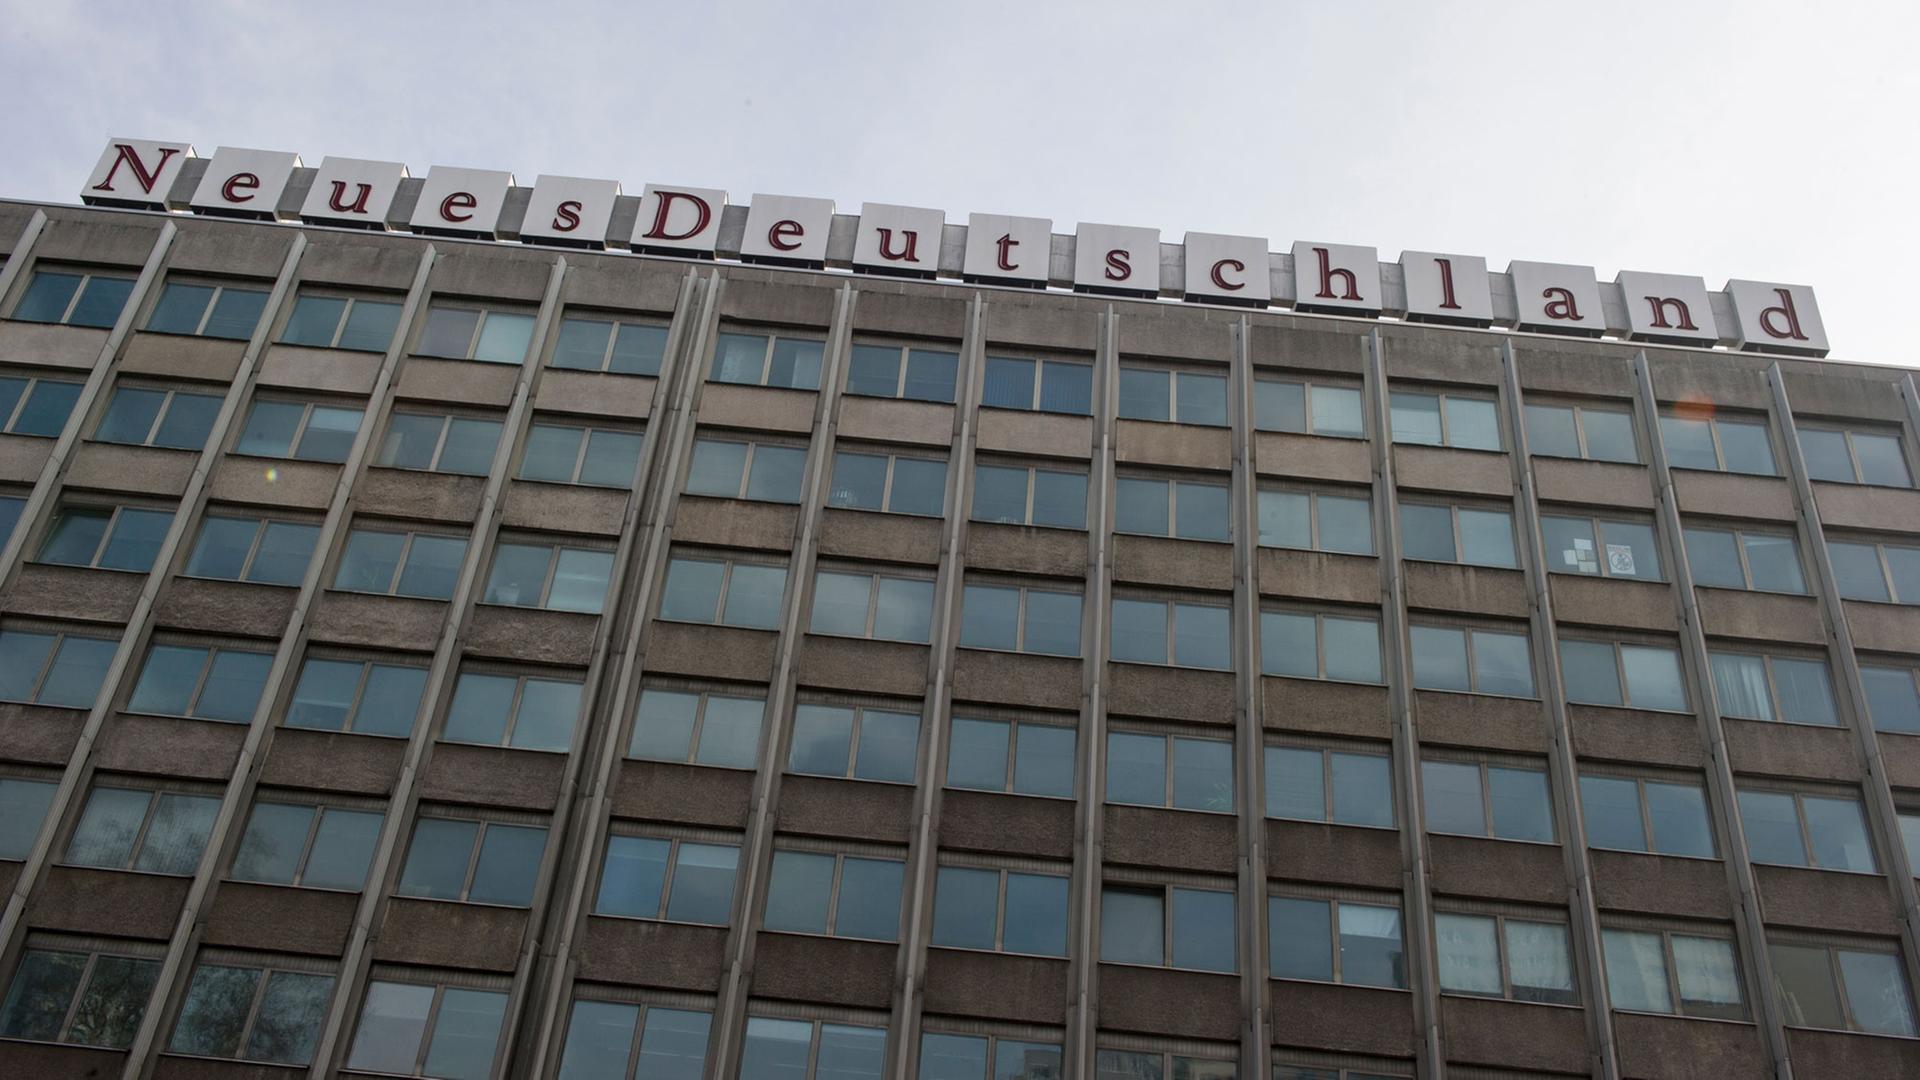 Der Schriftzug Neues Deutschland ist auf einem Gebäude am Berliner Franz-Mehring-Platz zu sehen. Dort ist unter anderem auch die Redaktion der überregionalen Tageszeitung "Neues Deutschland" untergebracht. Bis 1989 war die Zeitung in der DDR das Zentralorgan der Sozialistischen Einheitspartei Deutschlands (SED).